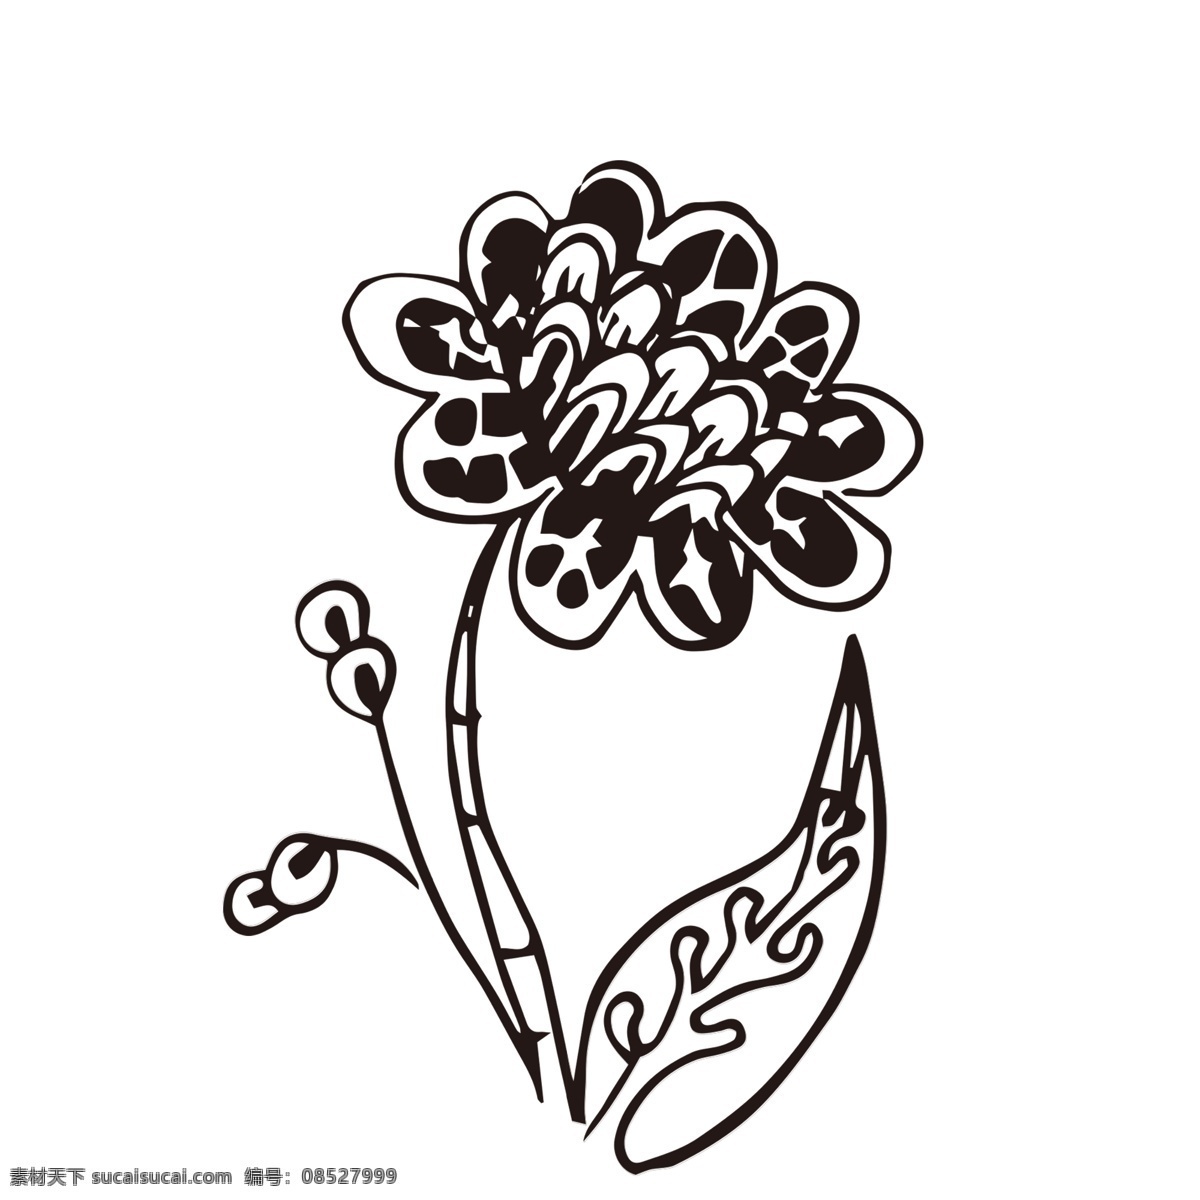 素描 花朵 装饰 手绘立体图标 创意 爱心 可爱 卡通 图标 剪影 卡通图标 素描花朵 涂鸦风